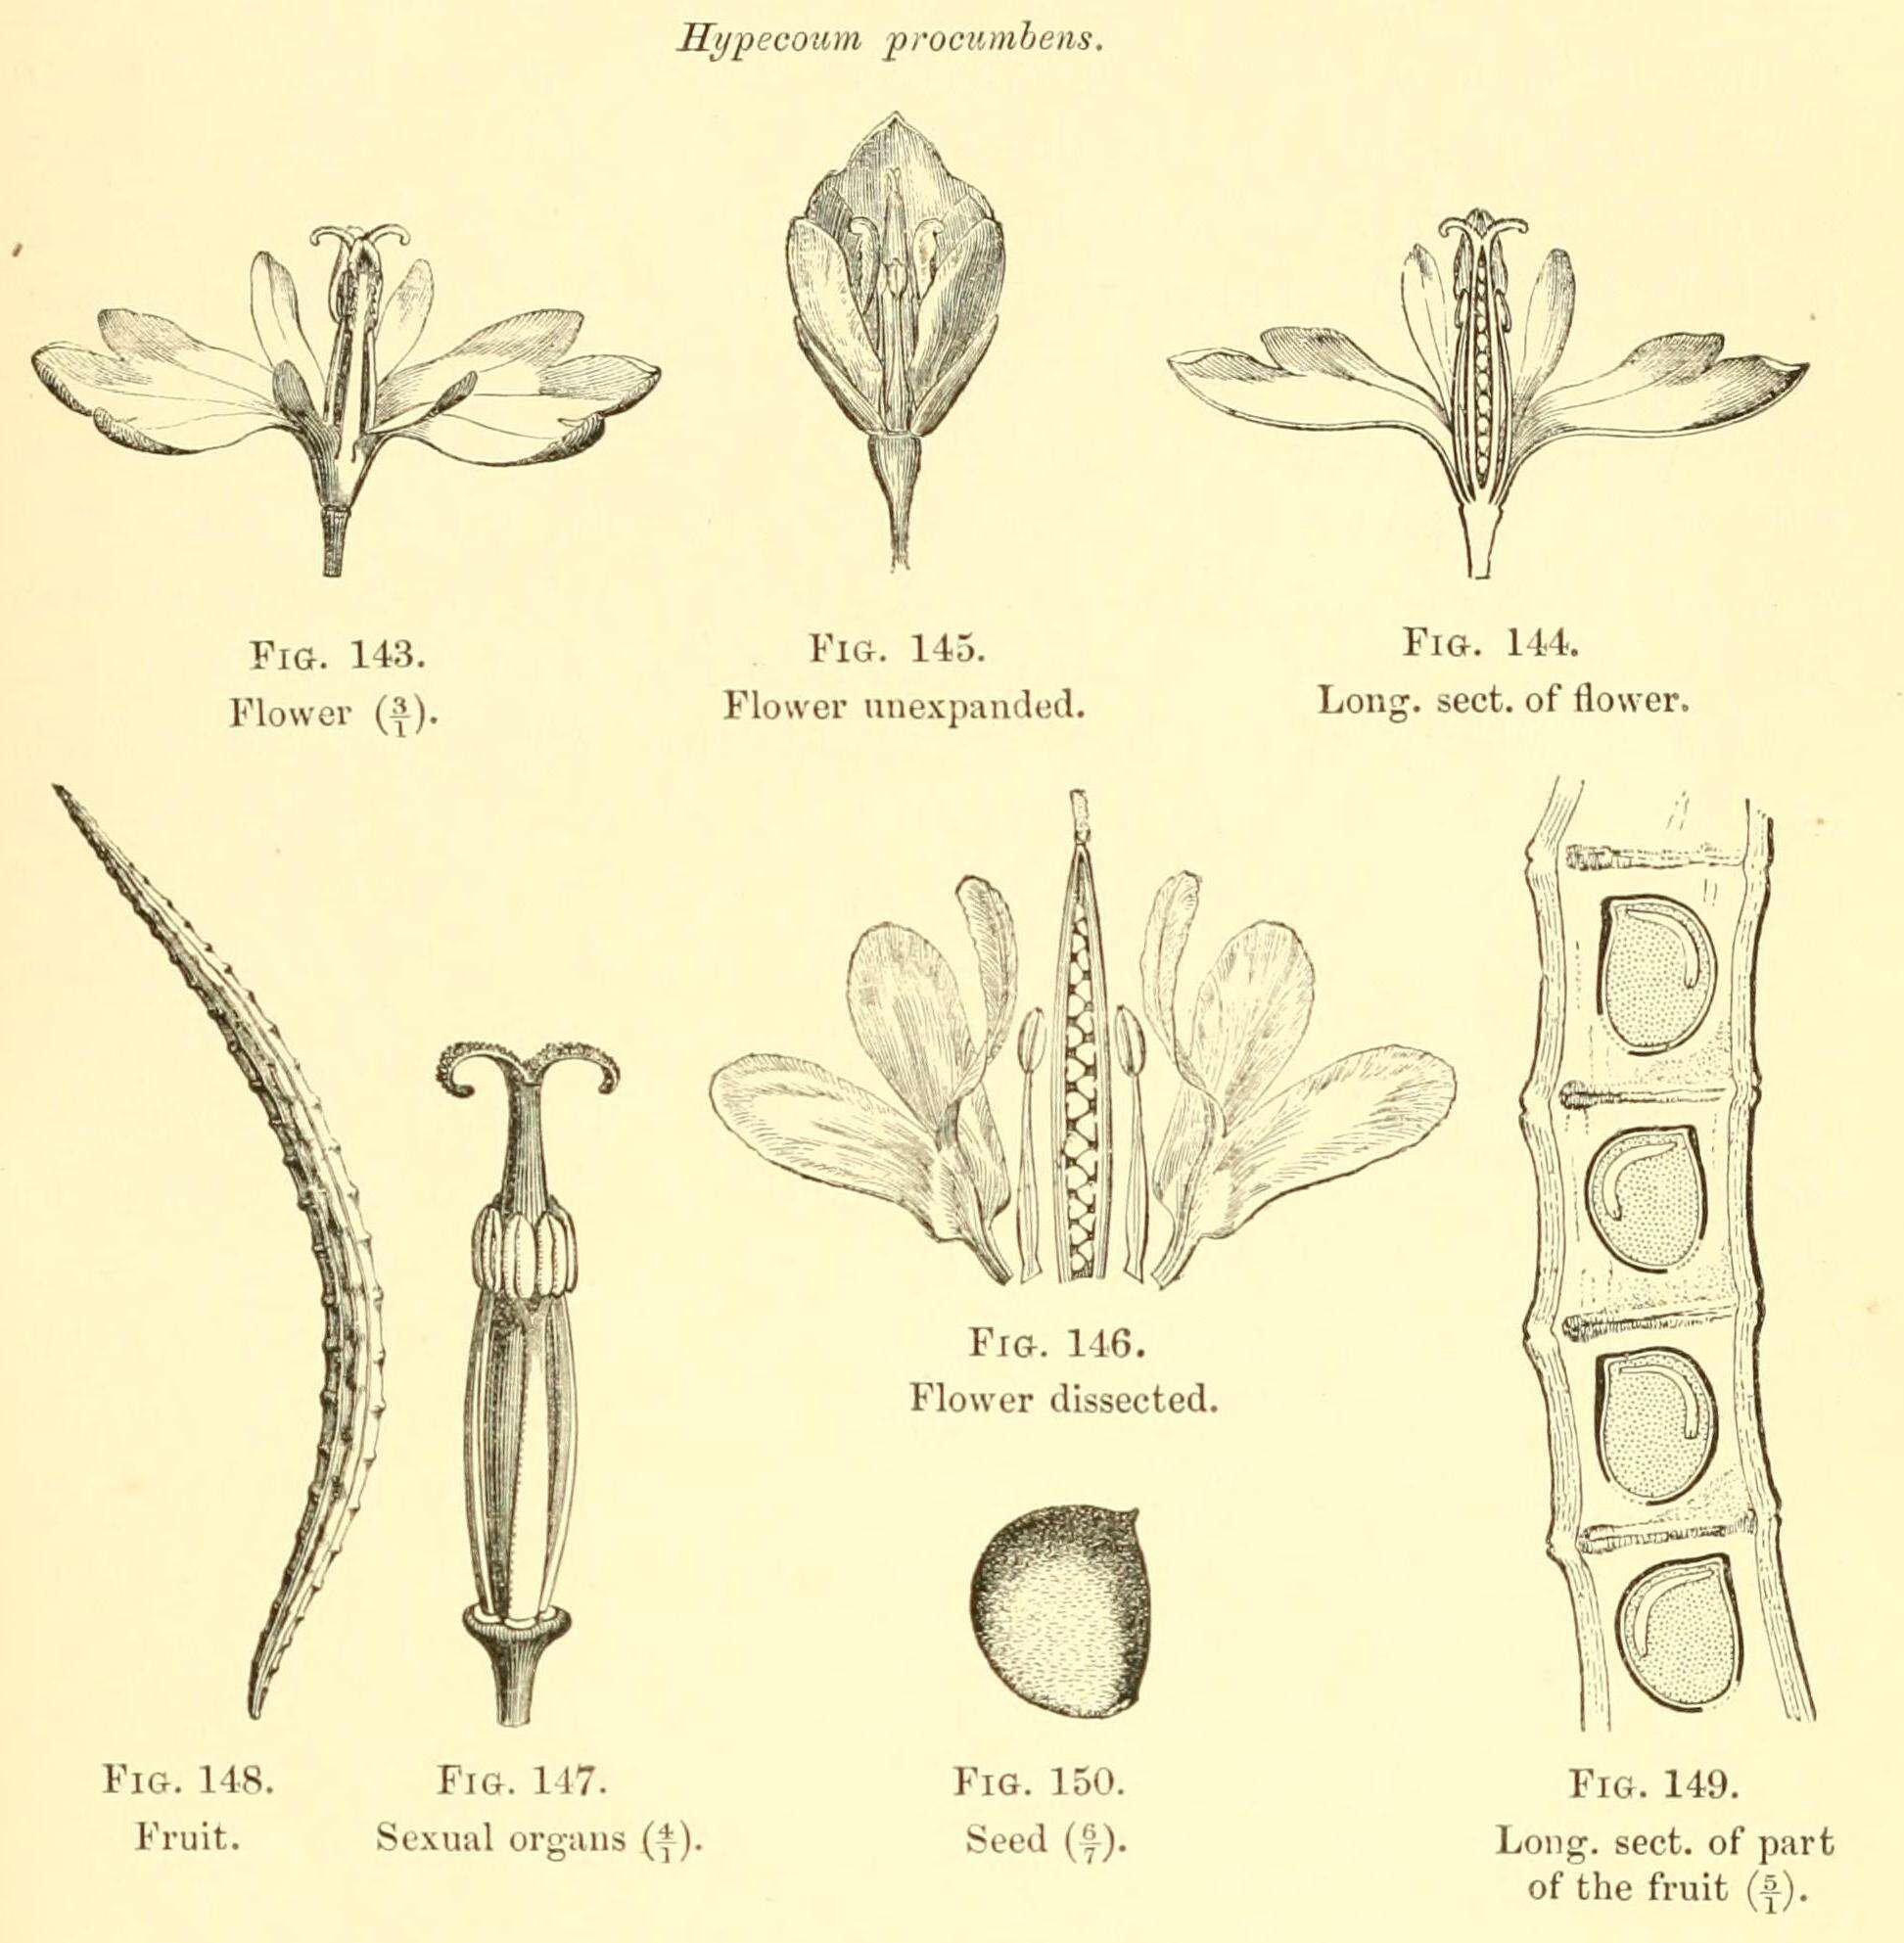 Image of Hypecoum procumbens L.